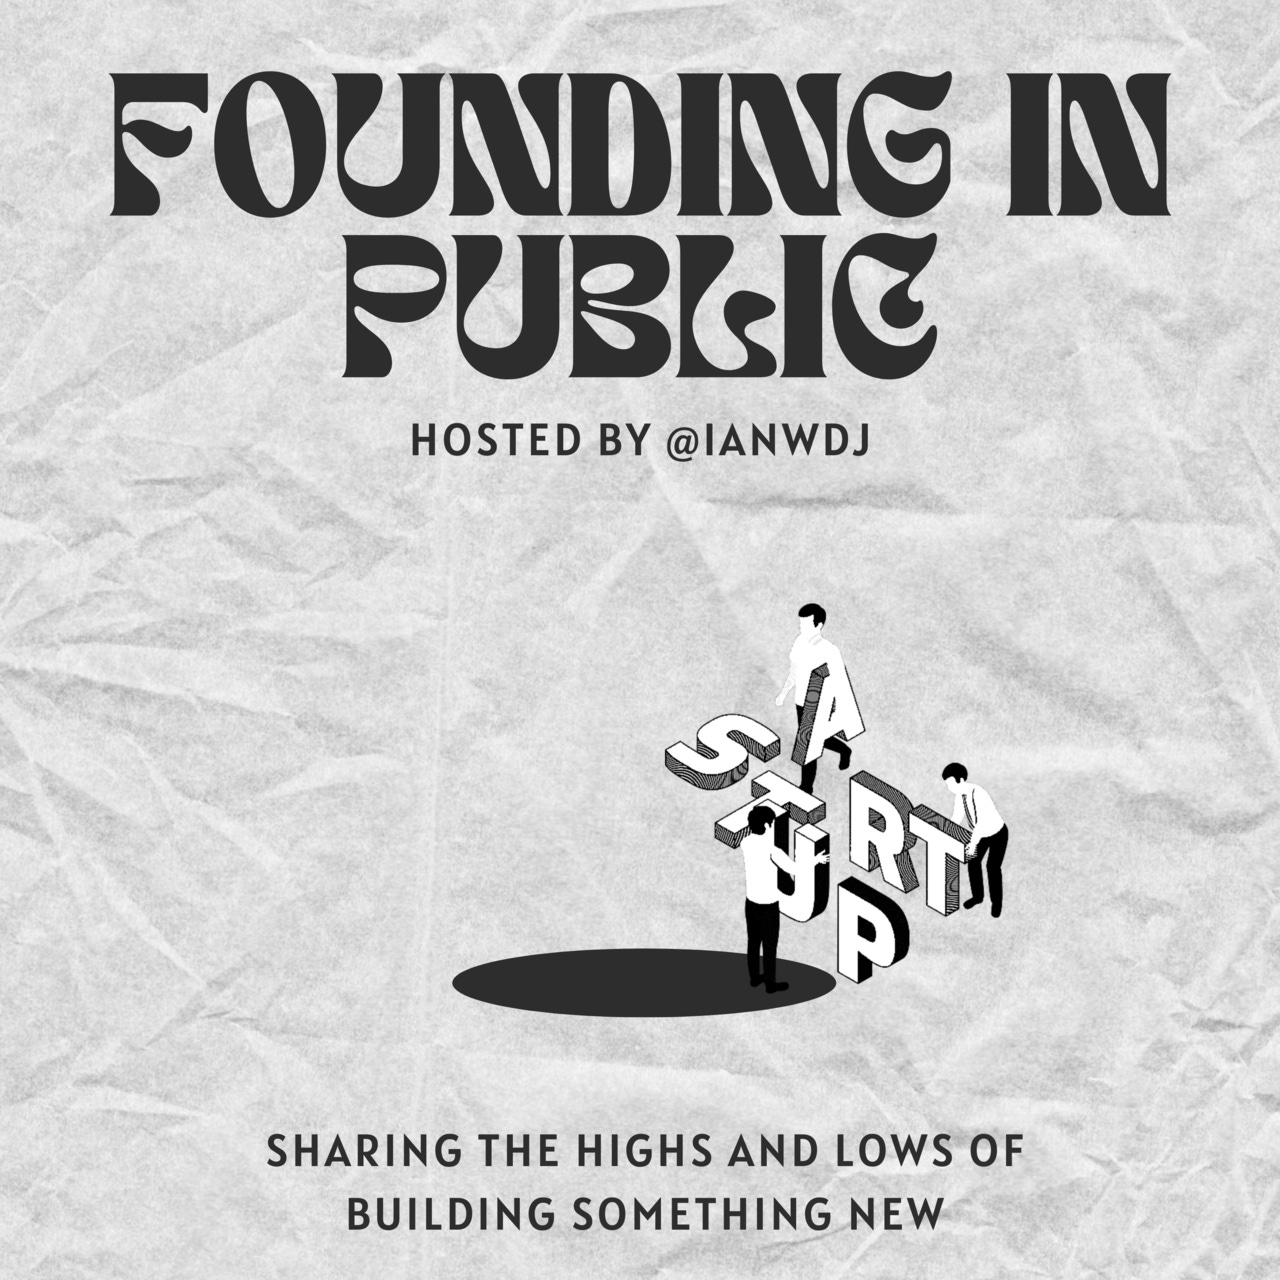 Founding in Public